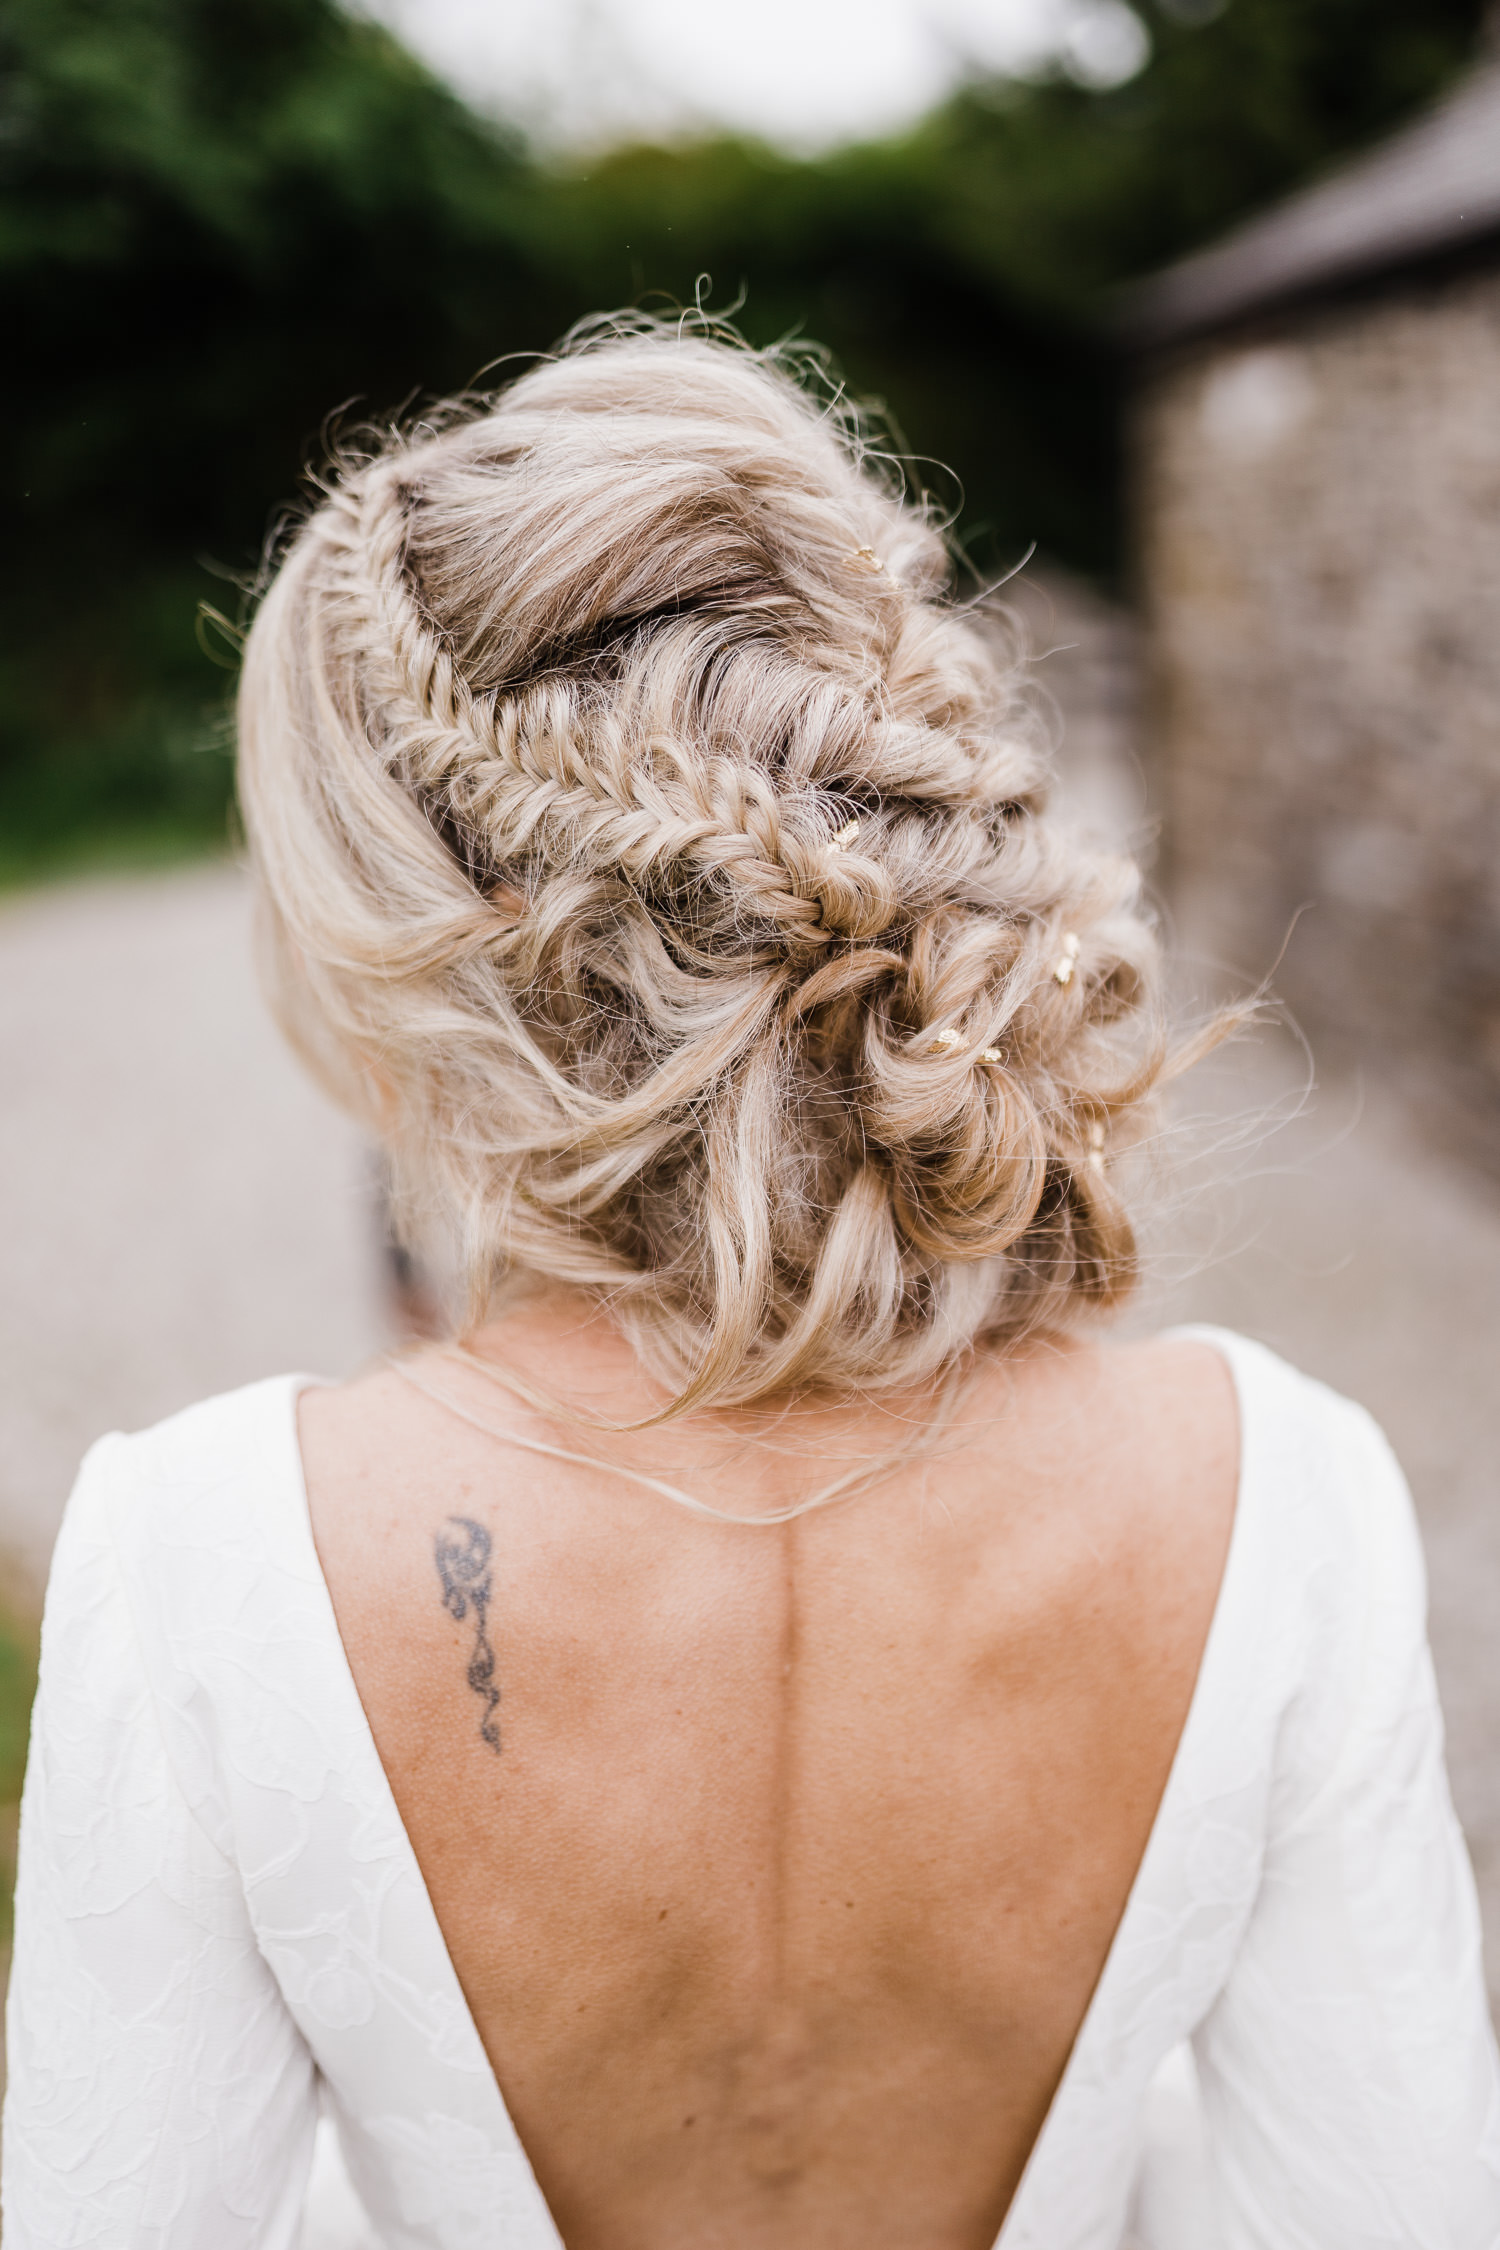 Bridal hair by Jodie Brent.